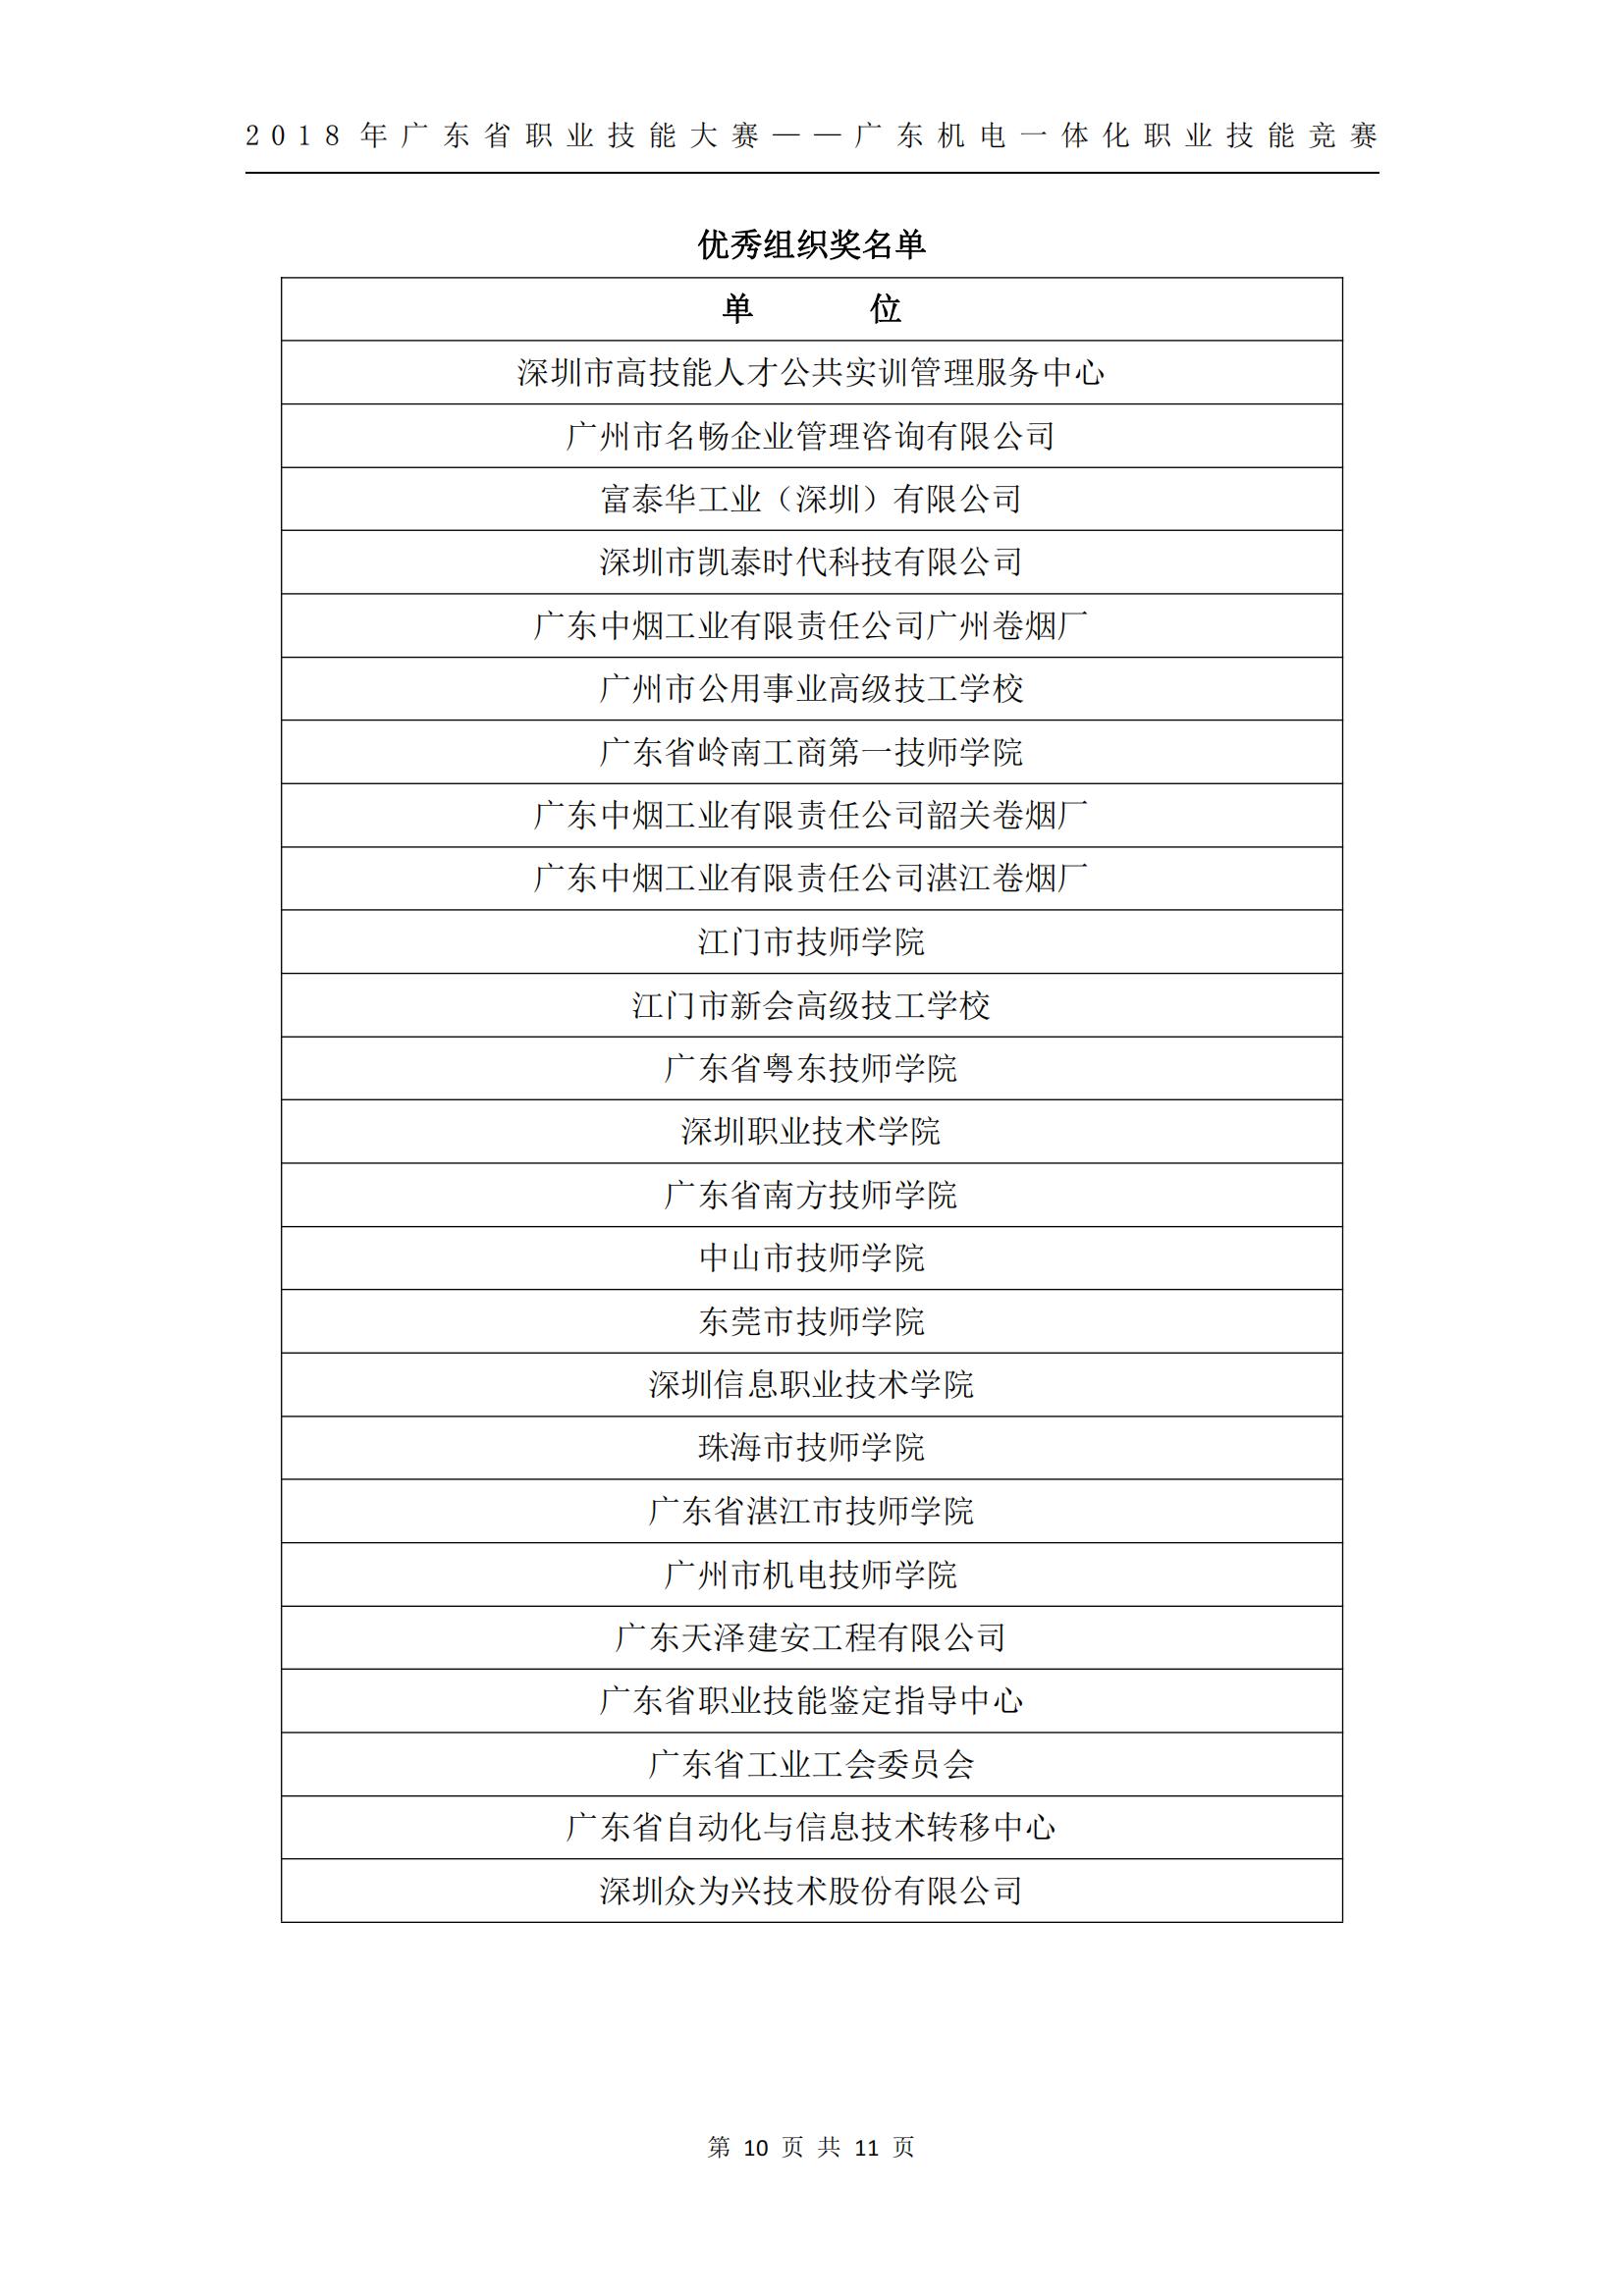 2018 年广东省职业技能大赛——广东机电一体化职业技能竞赛获奖人员和单位公布_09.jpg